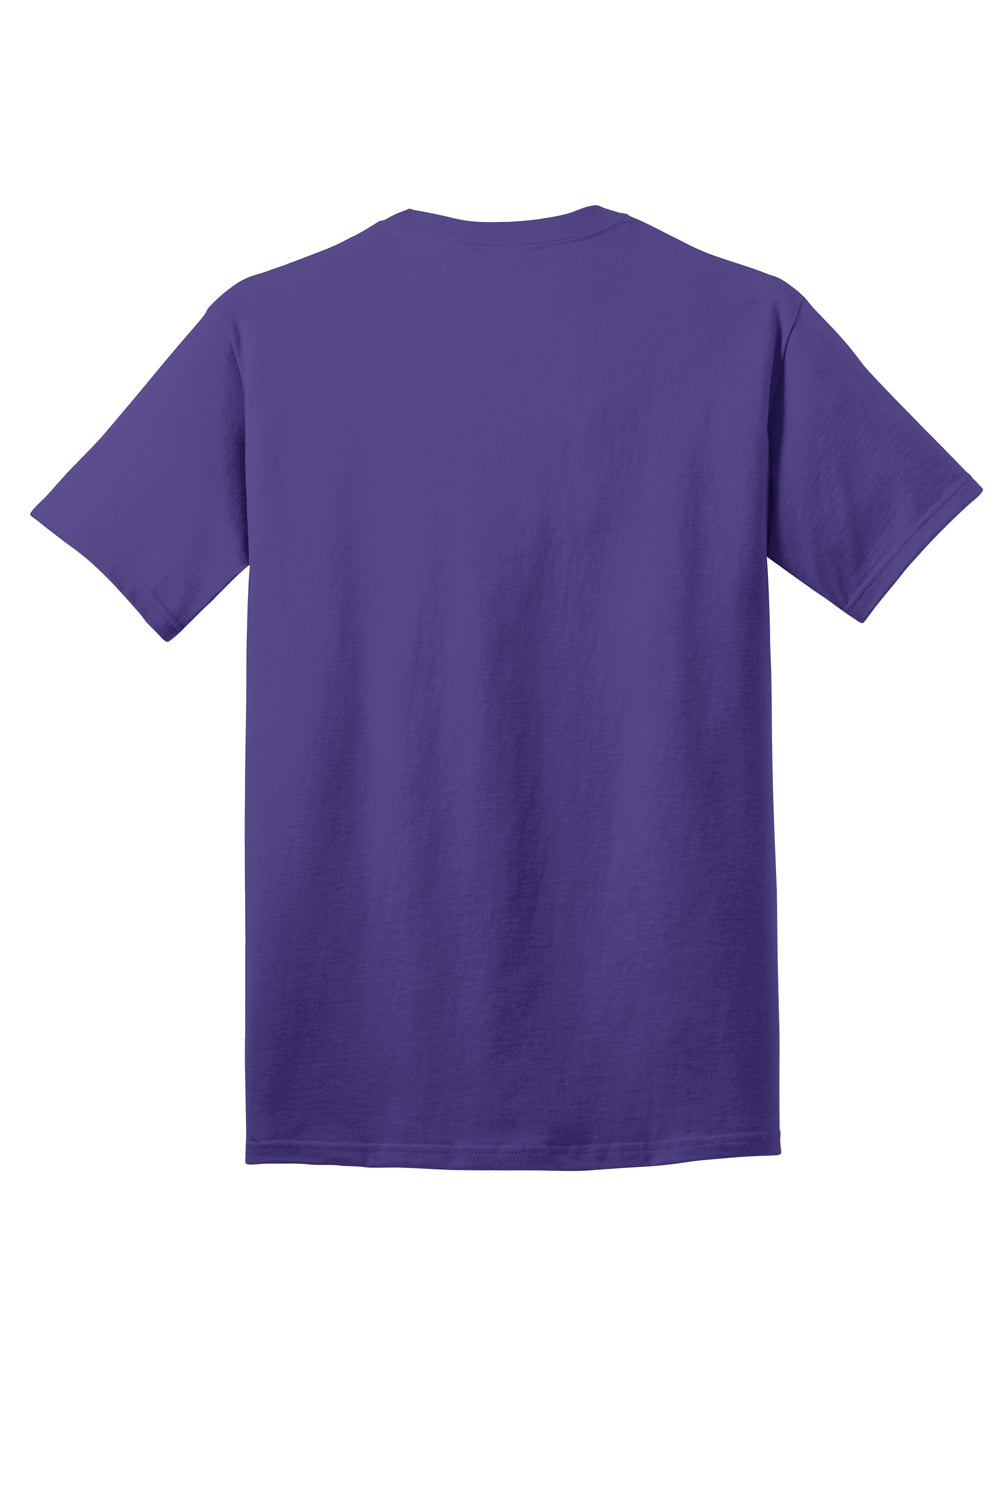 Port & Company PC54DTG Core Cotton DTG Short Sleeve Crewneck T-Shirt Purple Flat Back